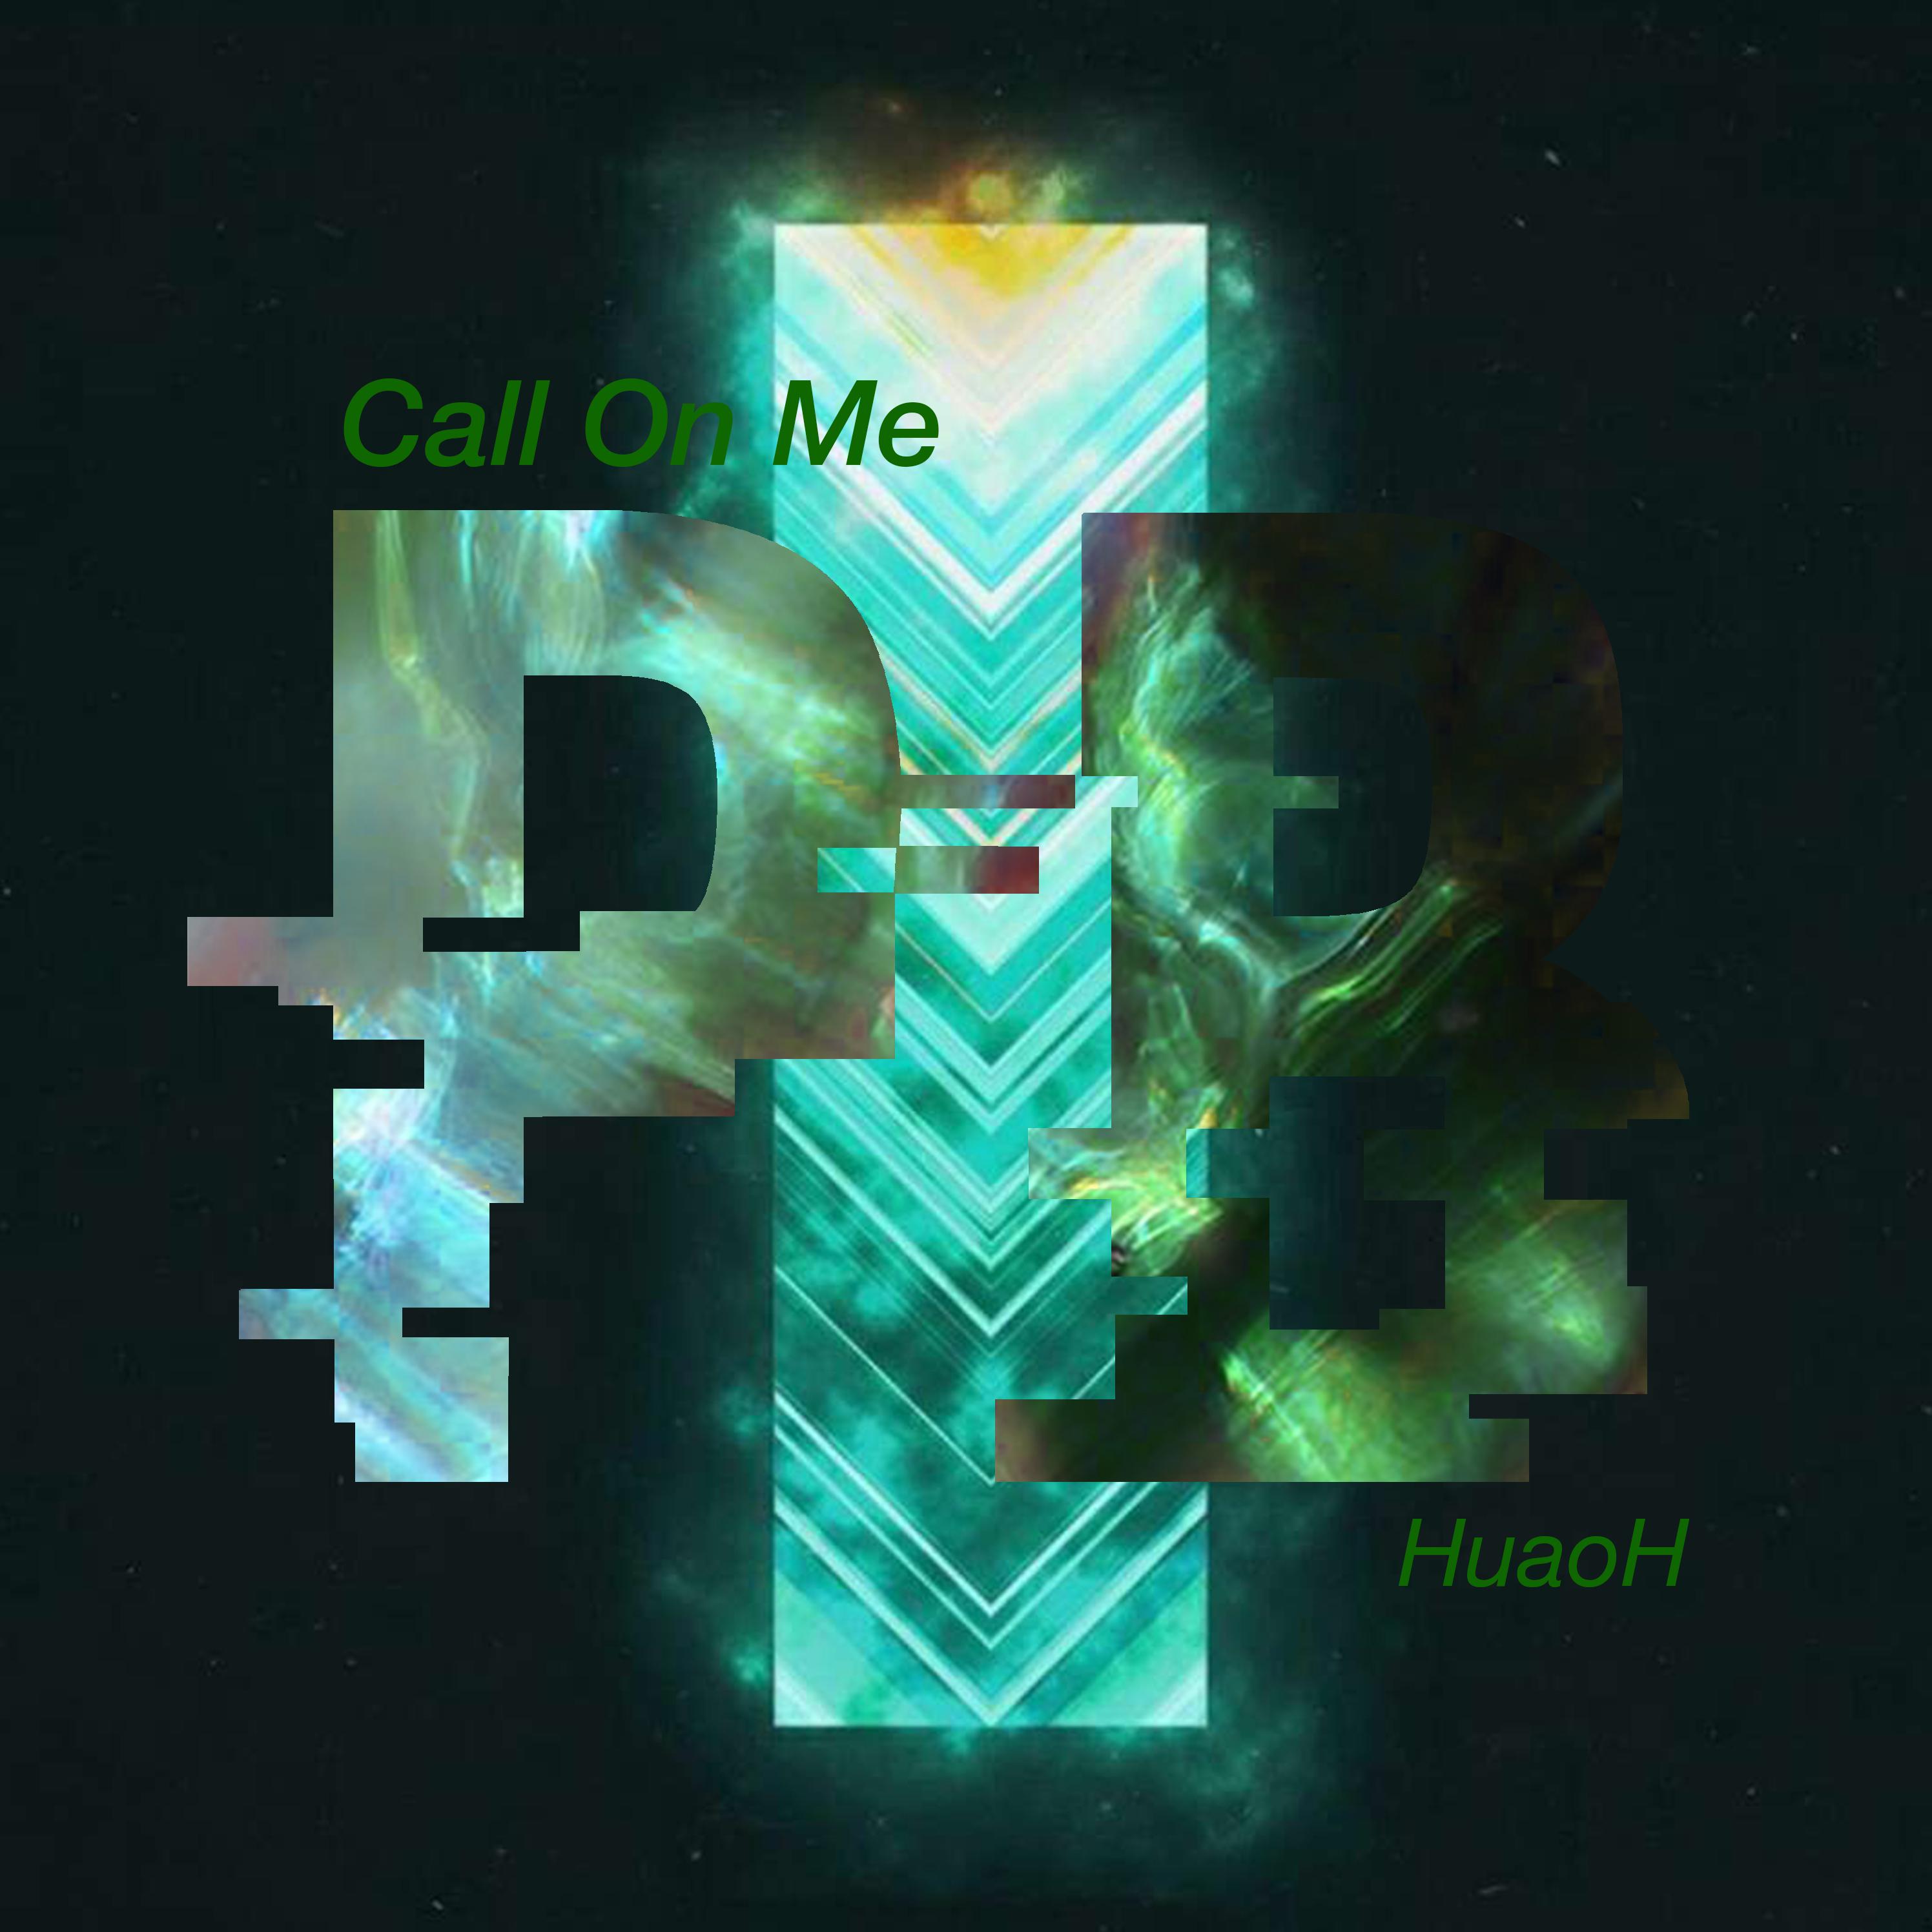 HUAOH - Call On Me